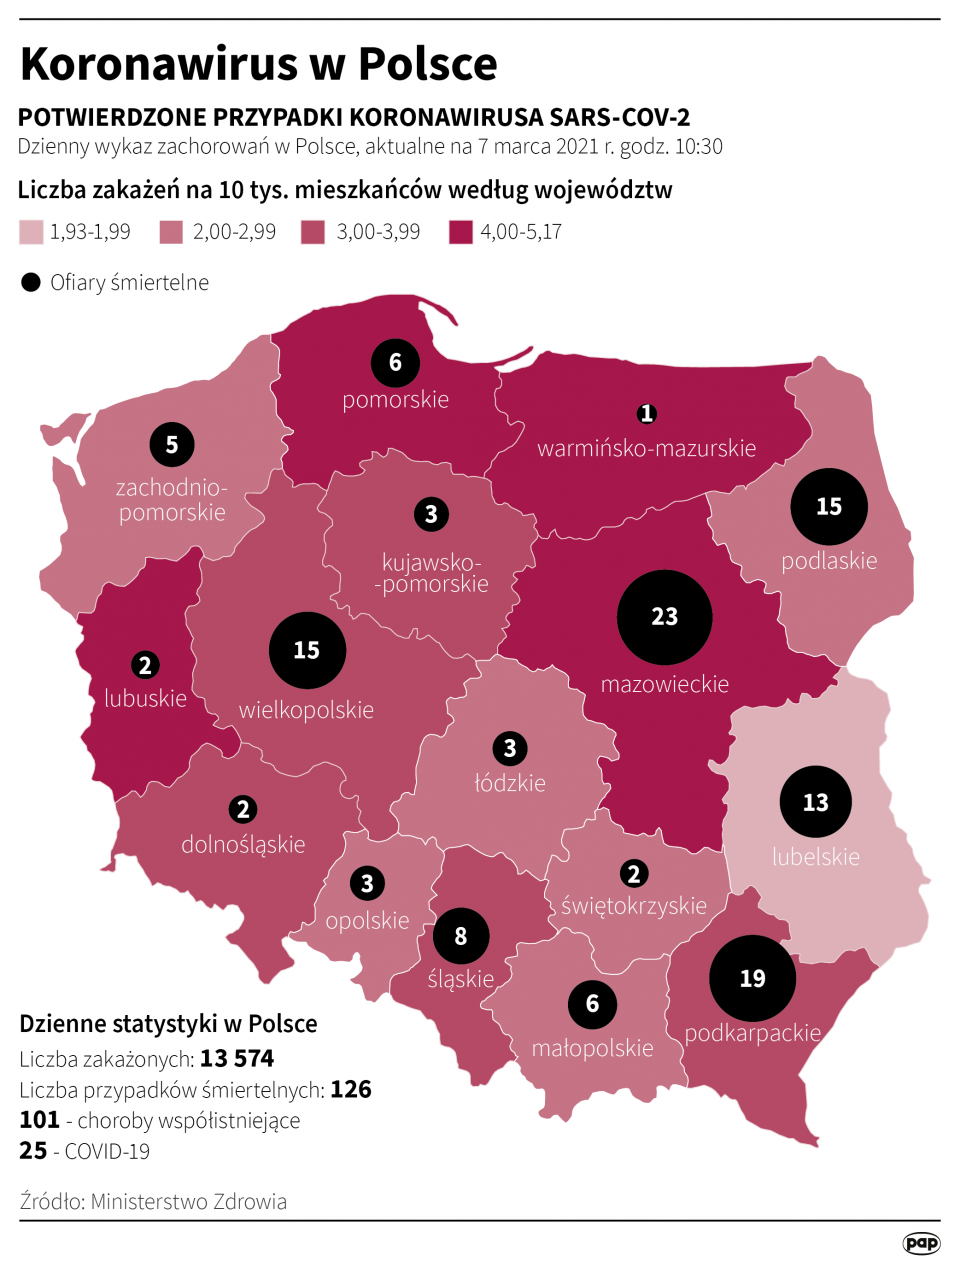 Koronawirus w Polsce stan na 7 marca [autor: Maria Samczuk, źródło: PAP]